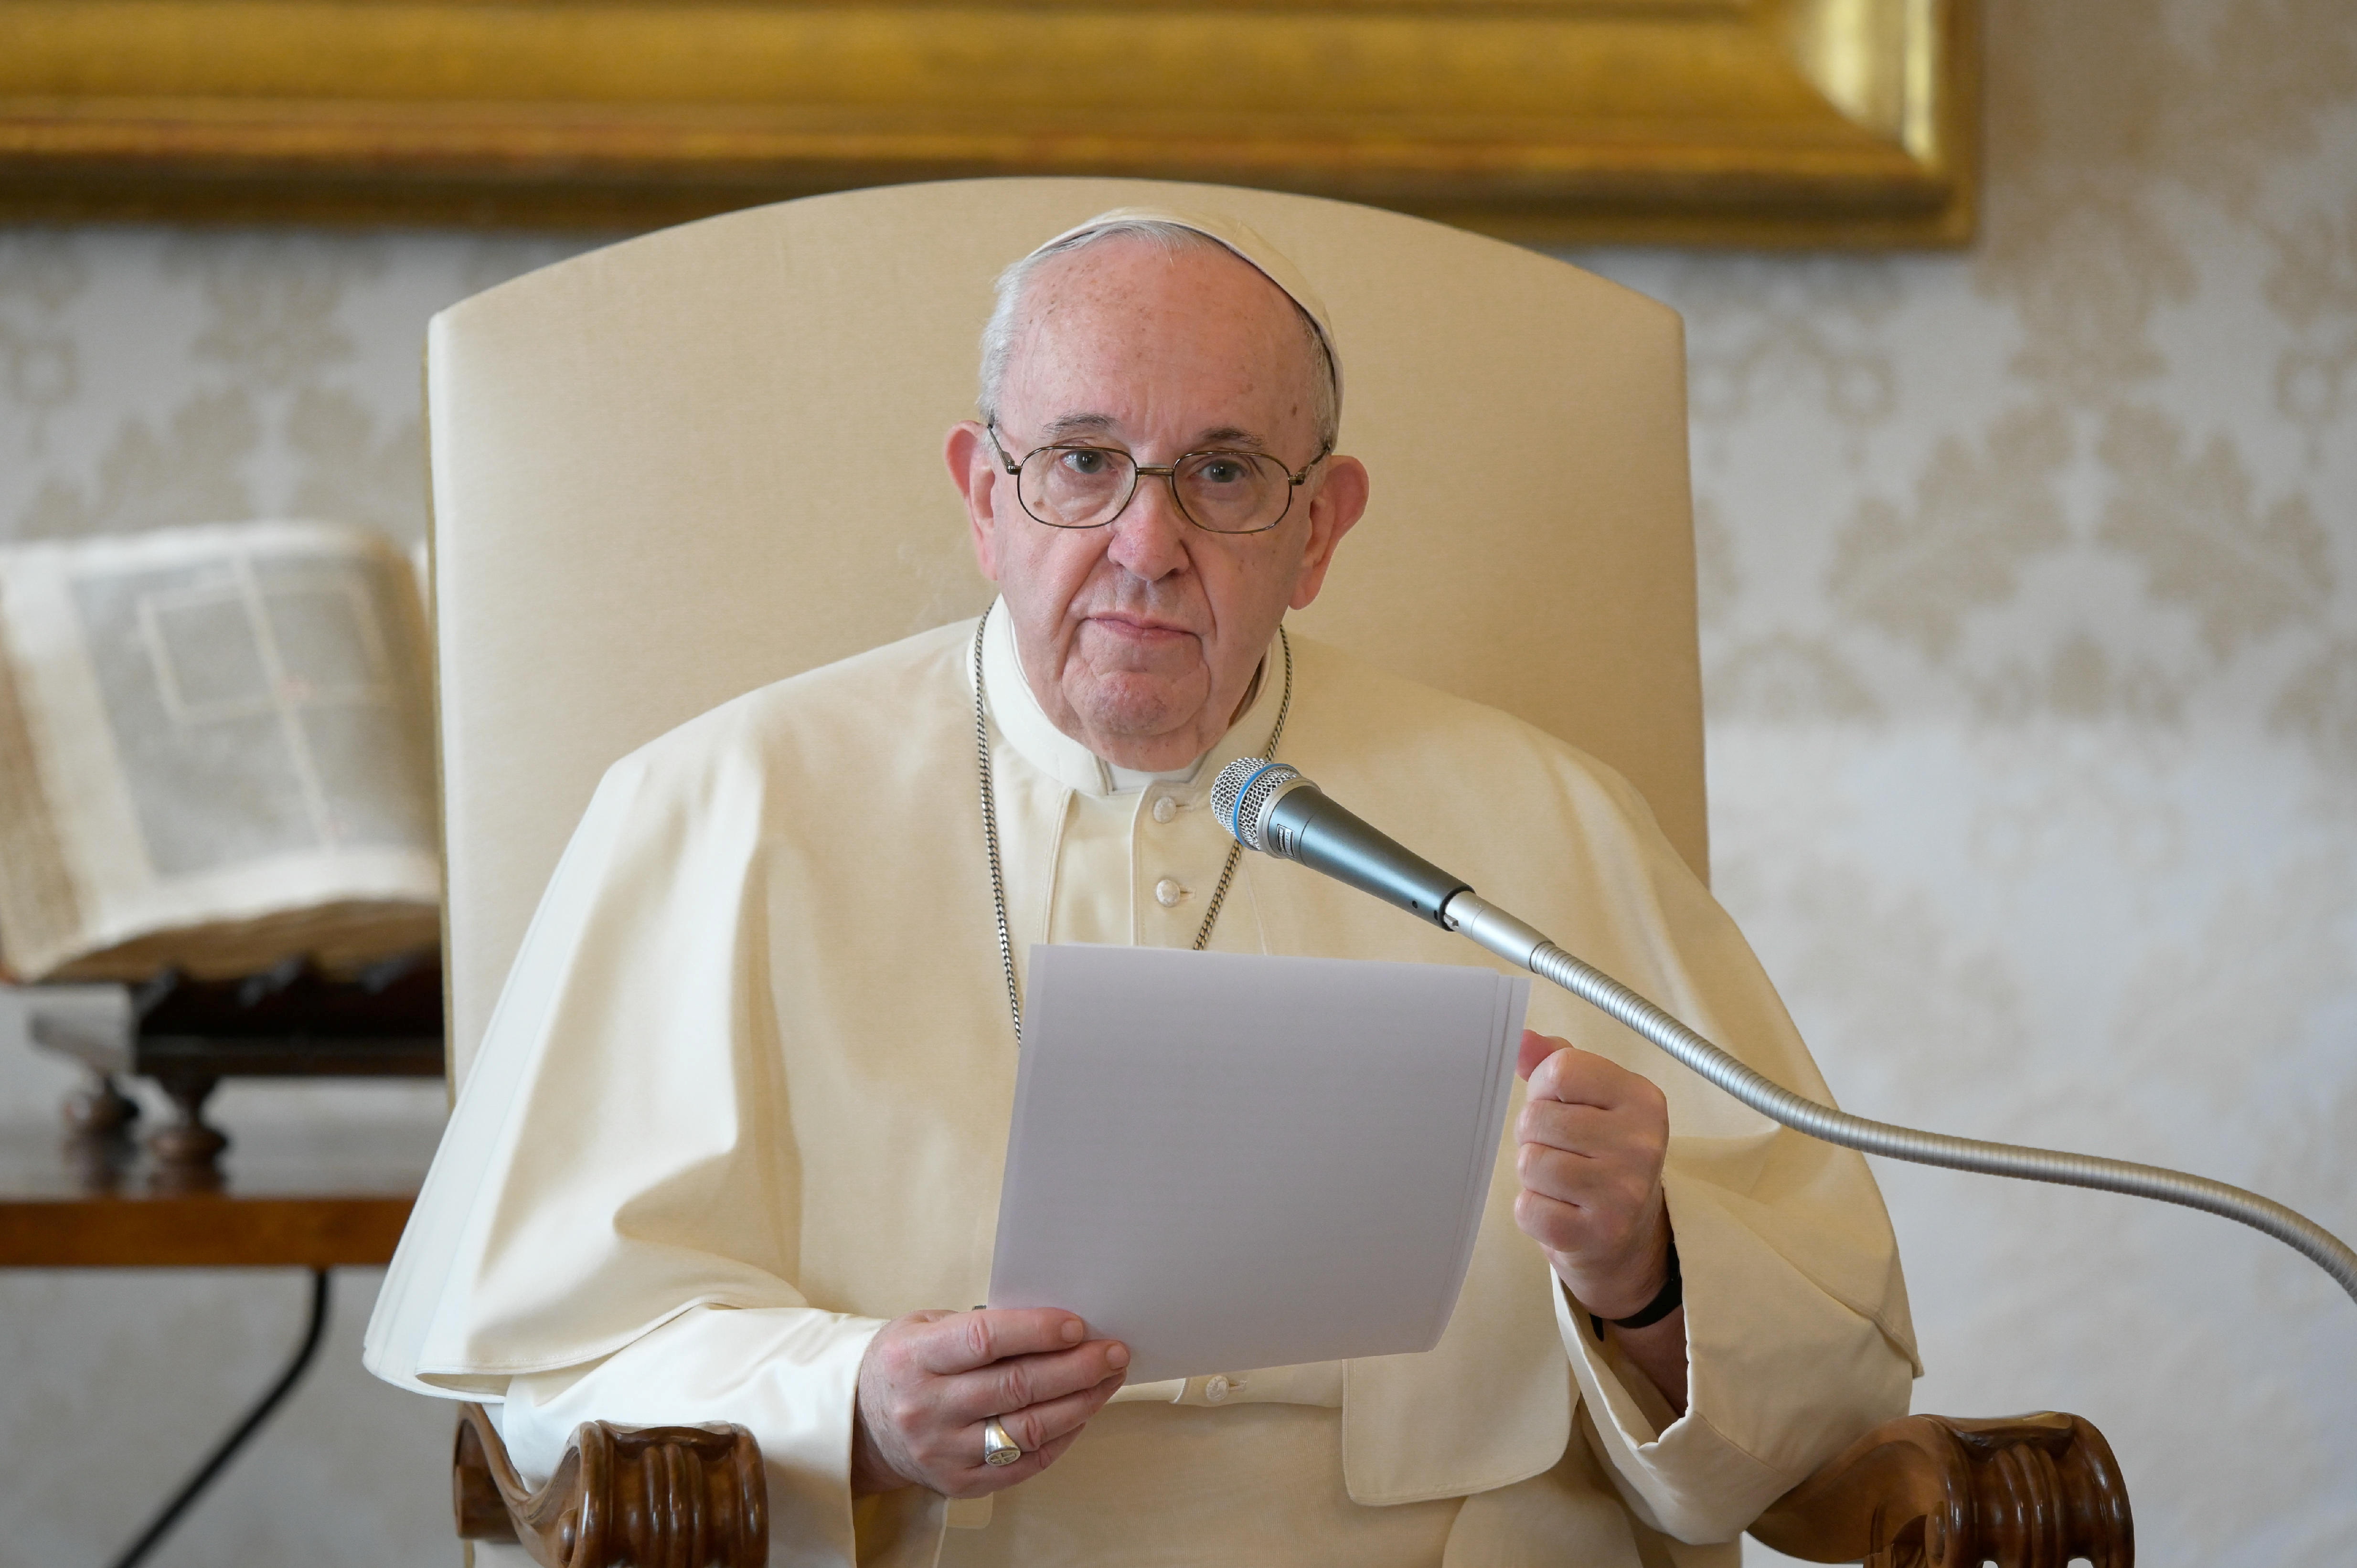 El papa Francisco condena “los horrores” en Nigeria tras masacre de 110 civiles